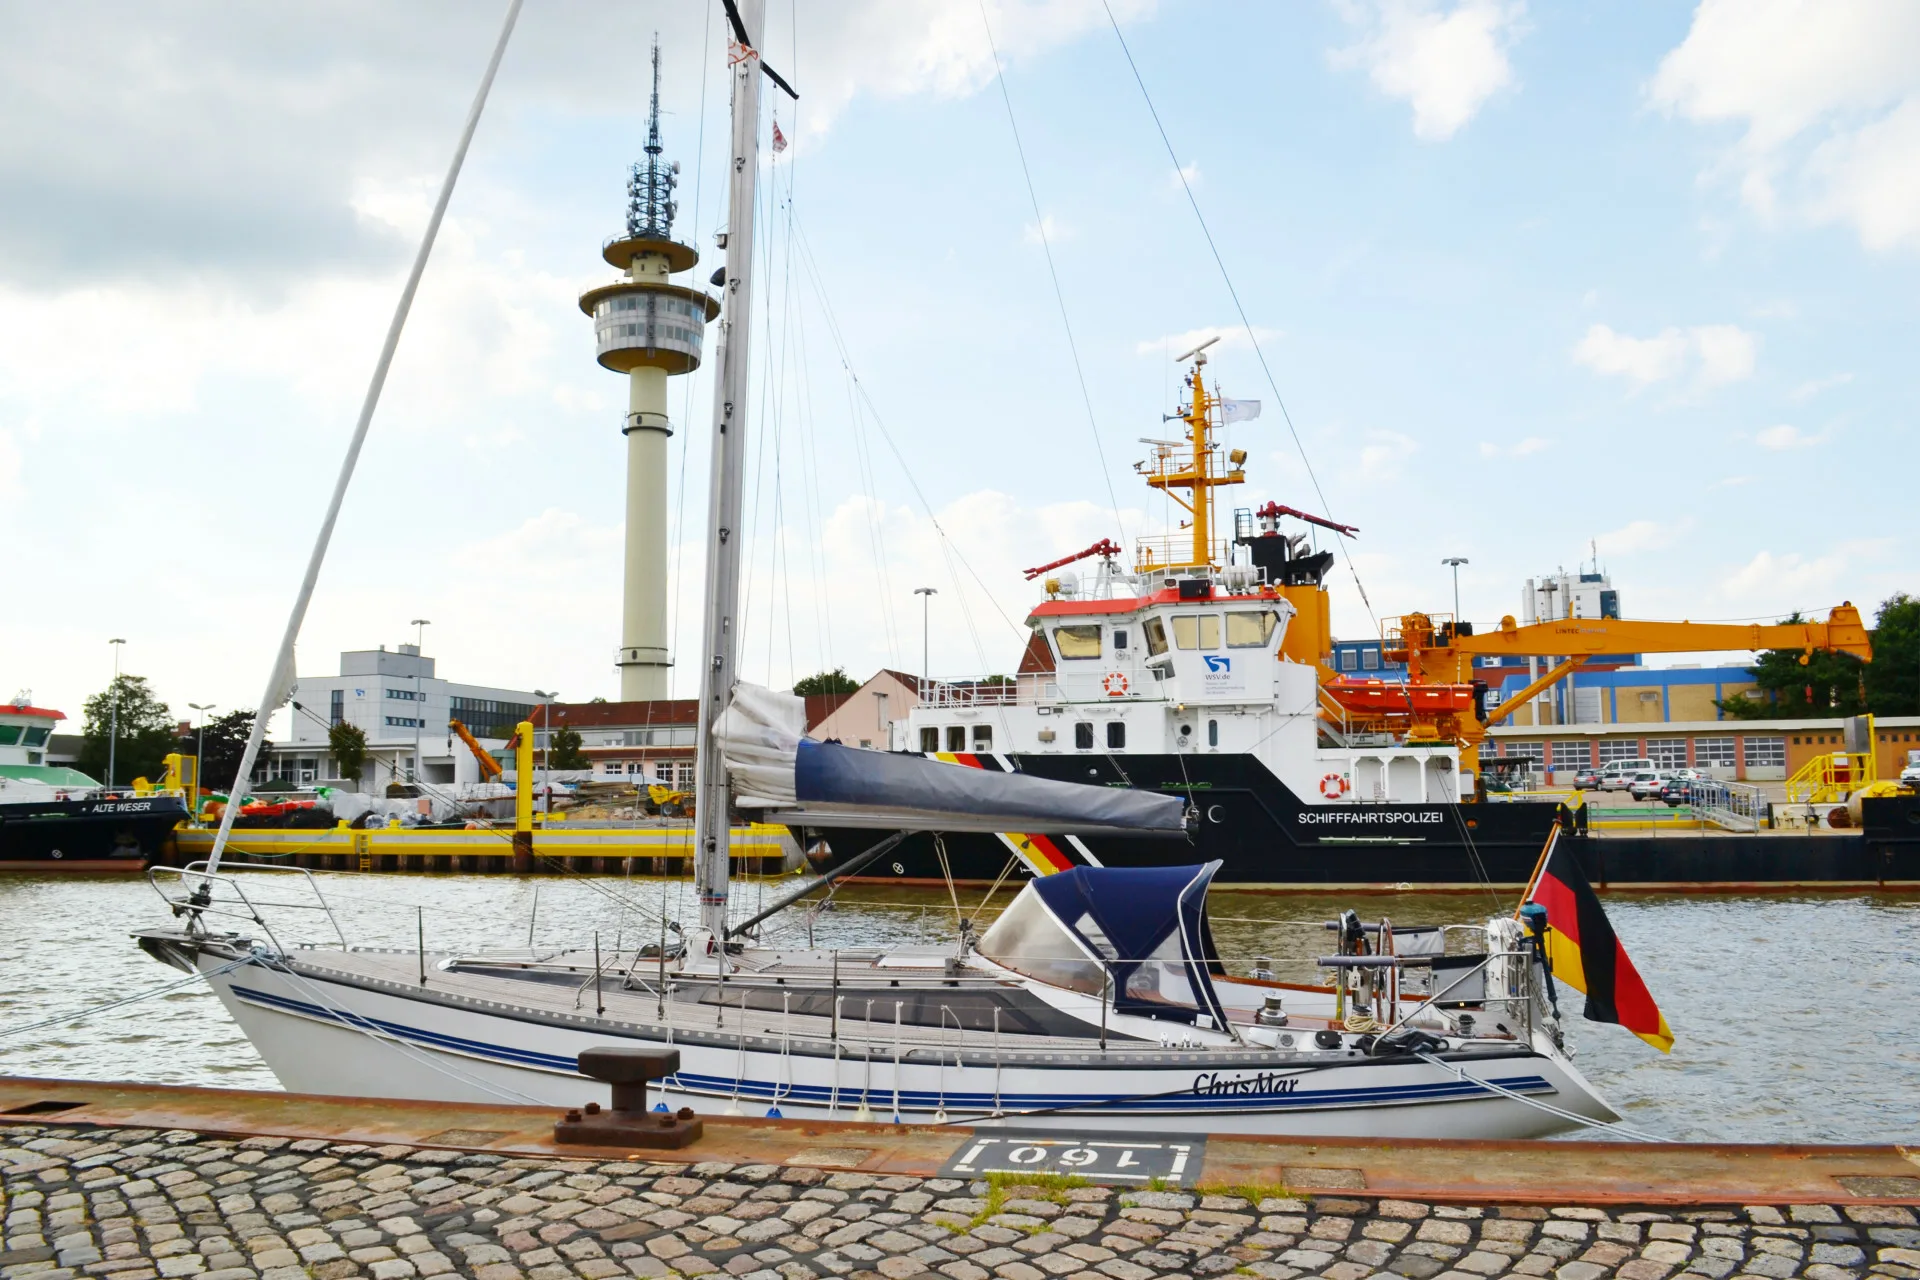 Τα αξιοθέατα έκπληξη στο λιμάνι Μπρεμερχάβεν της Γερμανίας 